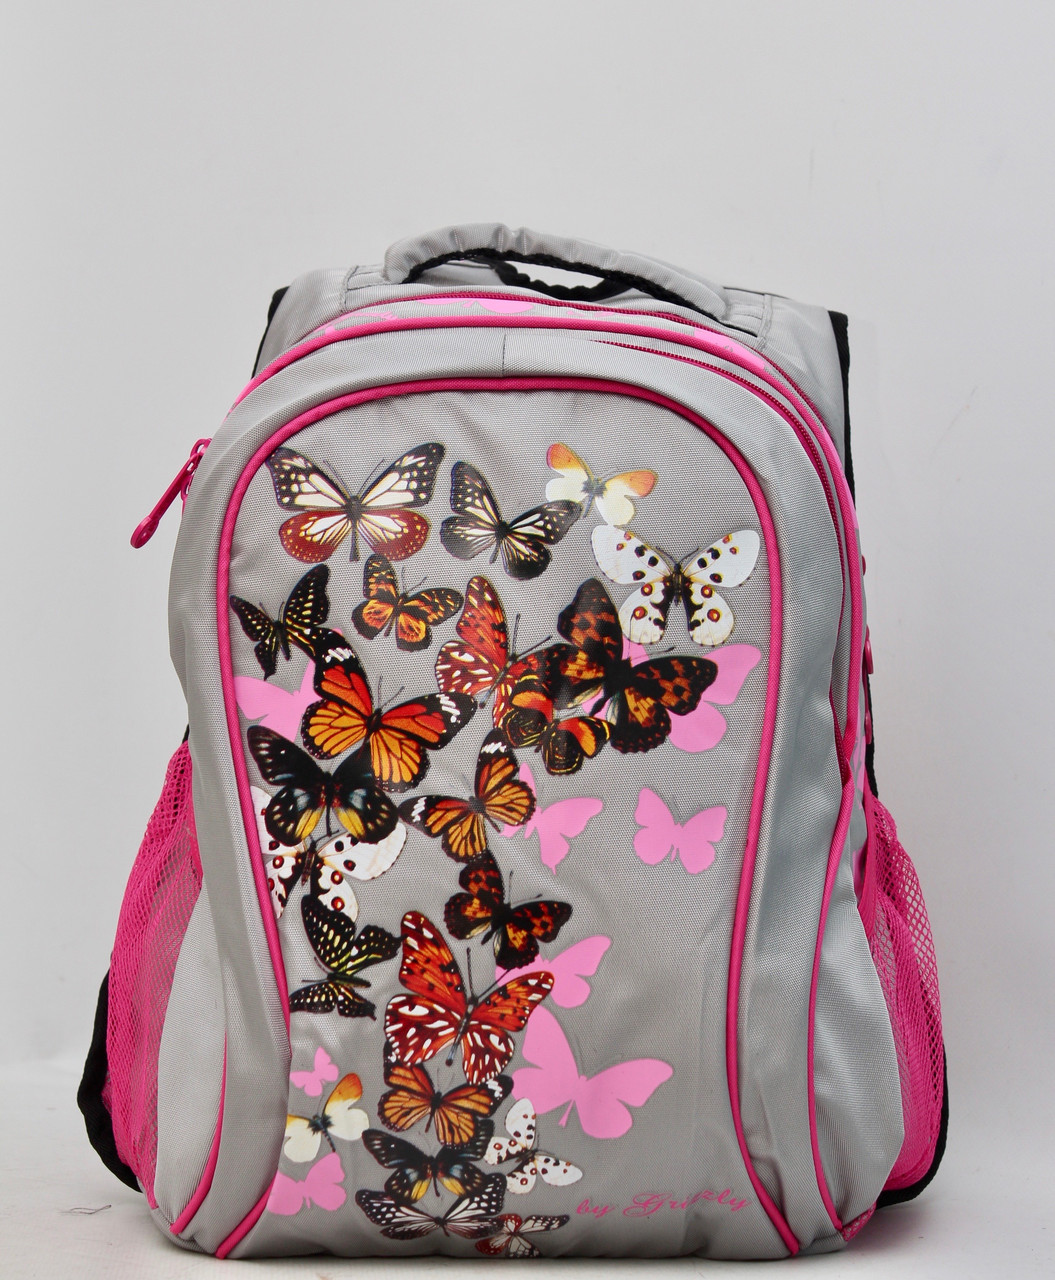 

Шкільний ортопедичний рюкзак для підлітка дівчинки / Ортопедичний школьный рюкзак для подростка девочки